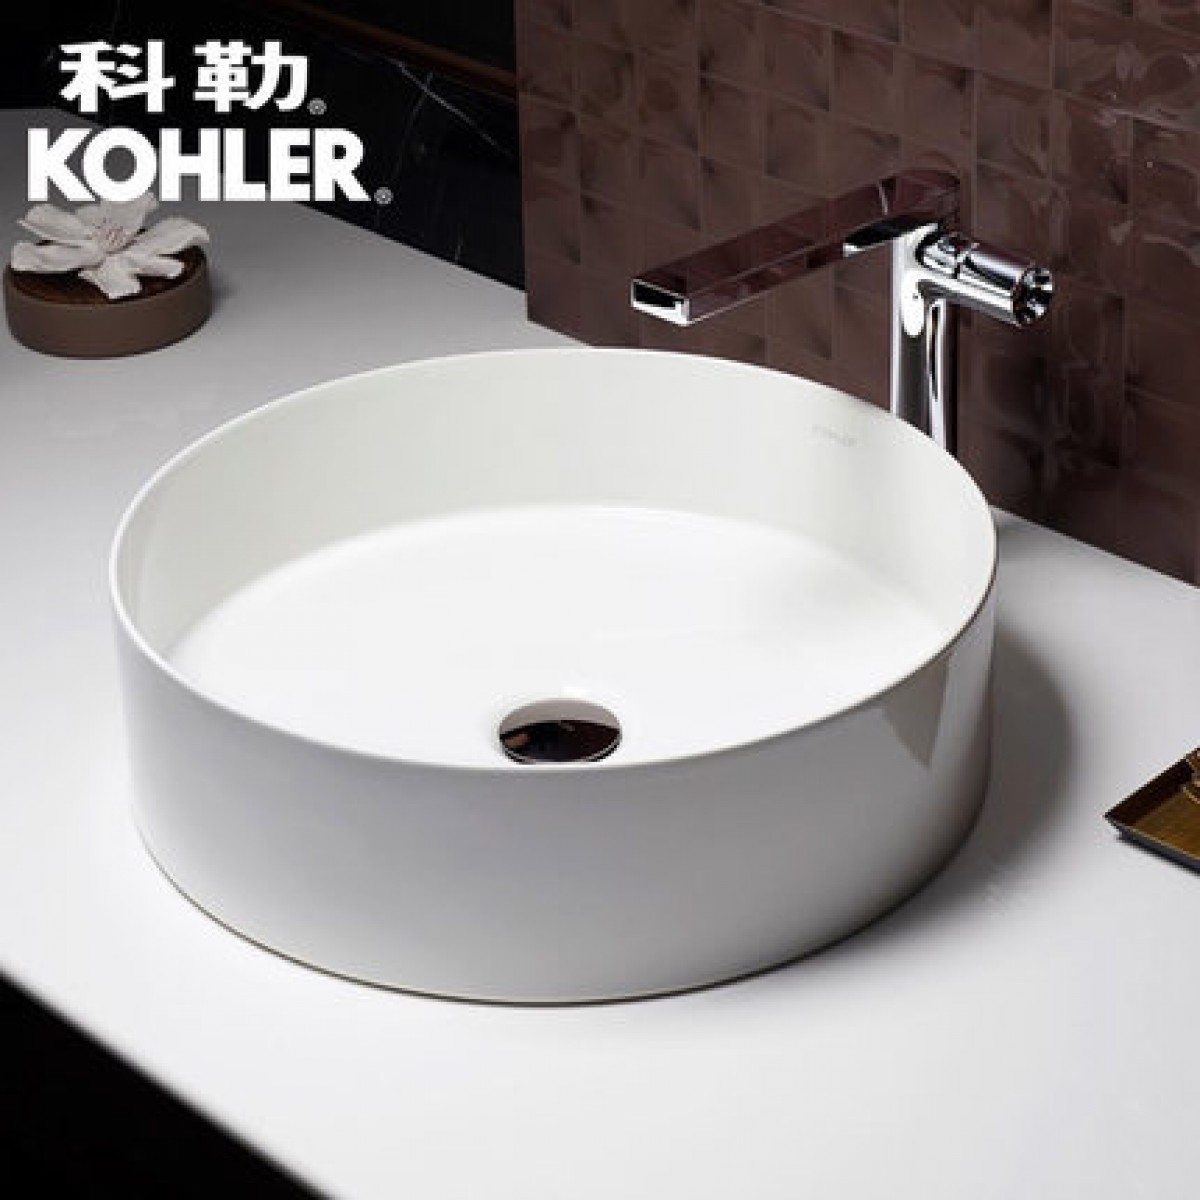 科勒卫浴 K-2211T型号台下脸盆 陶瓷材质白色台盆面盆